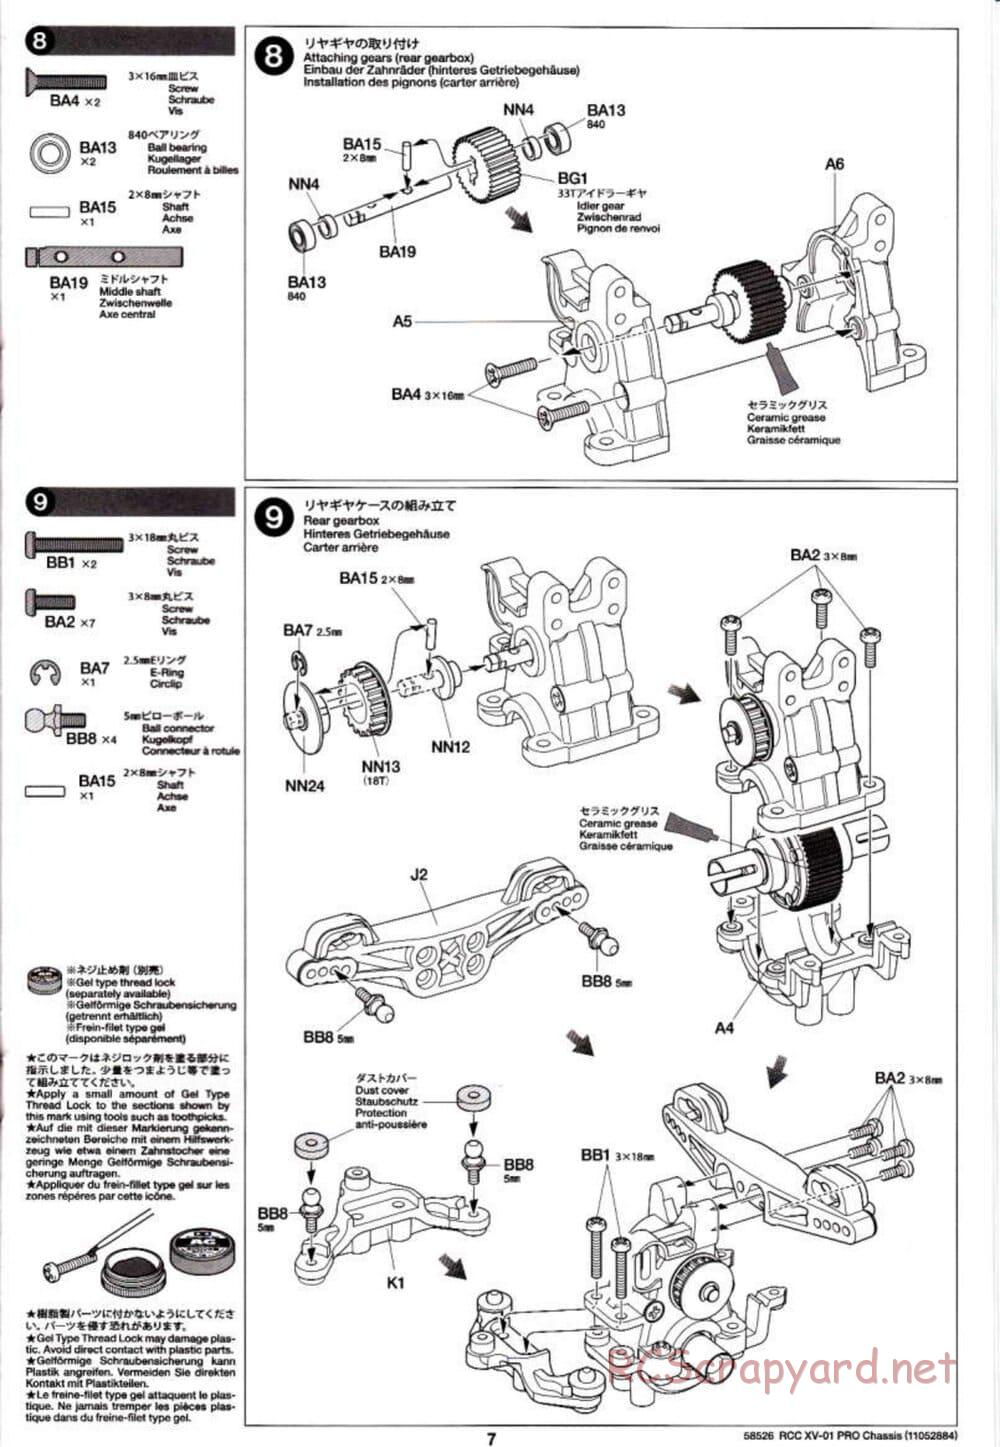 Tamiya - XV-01 PRO Chassis - Manual - Page 7